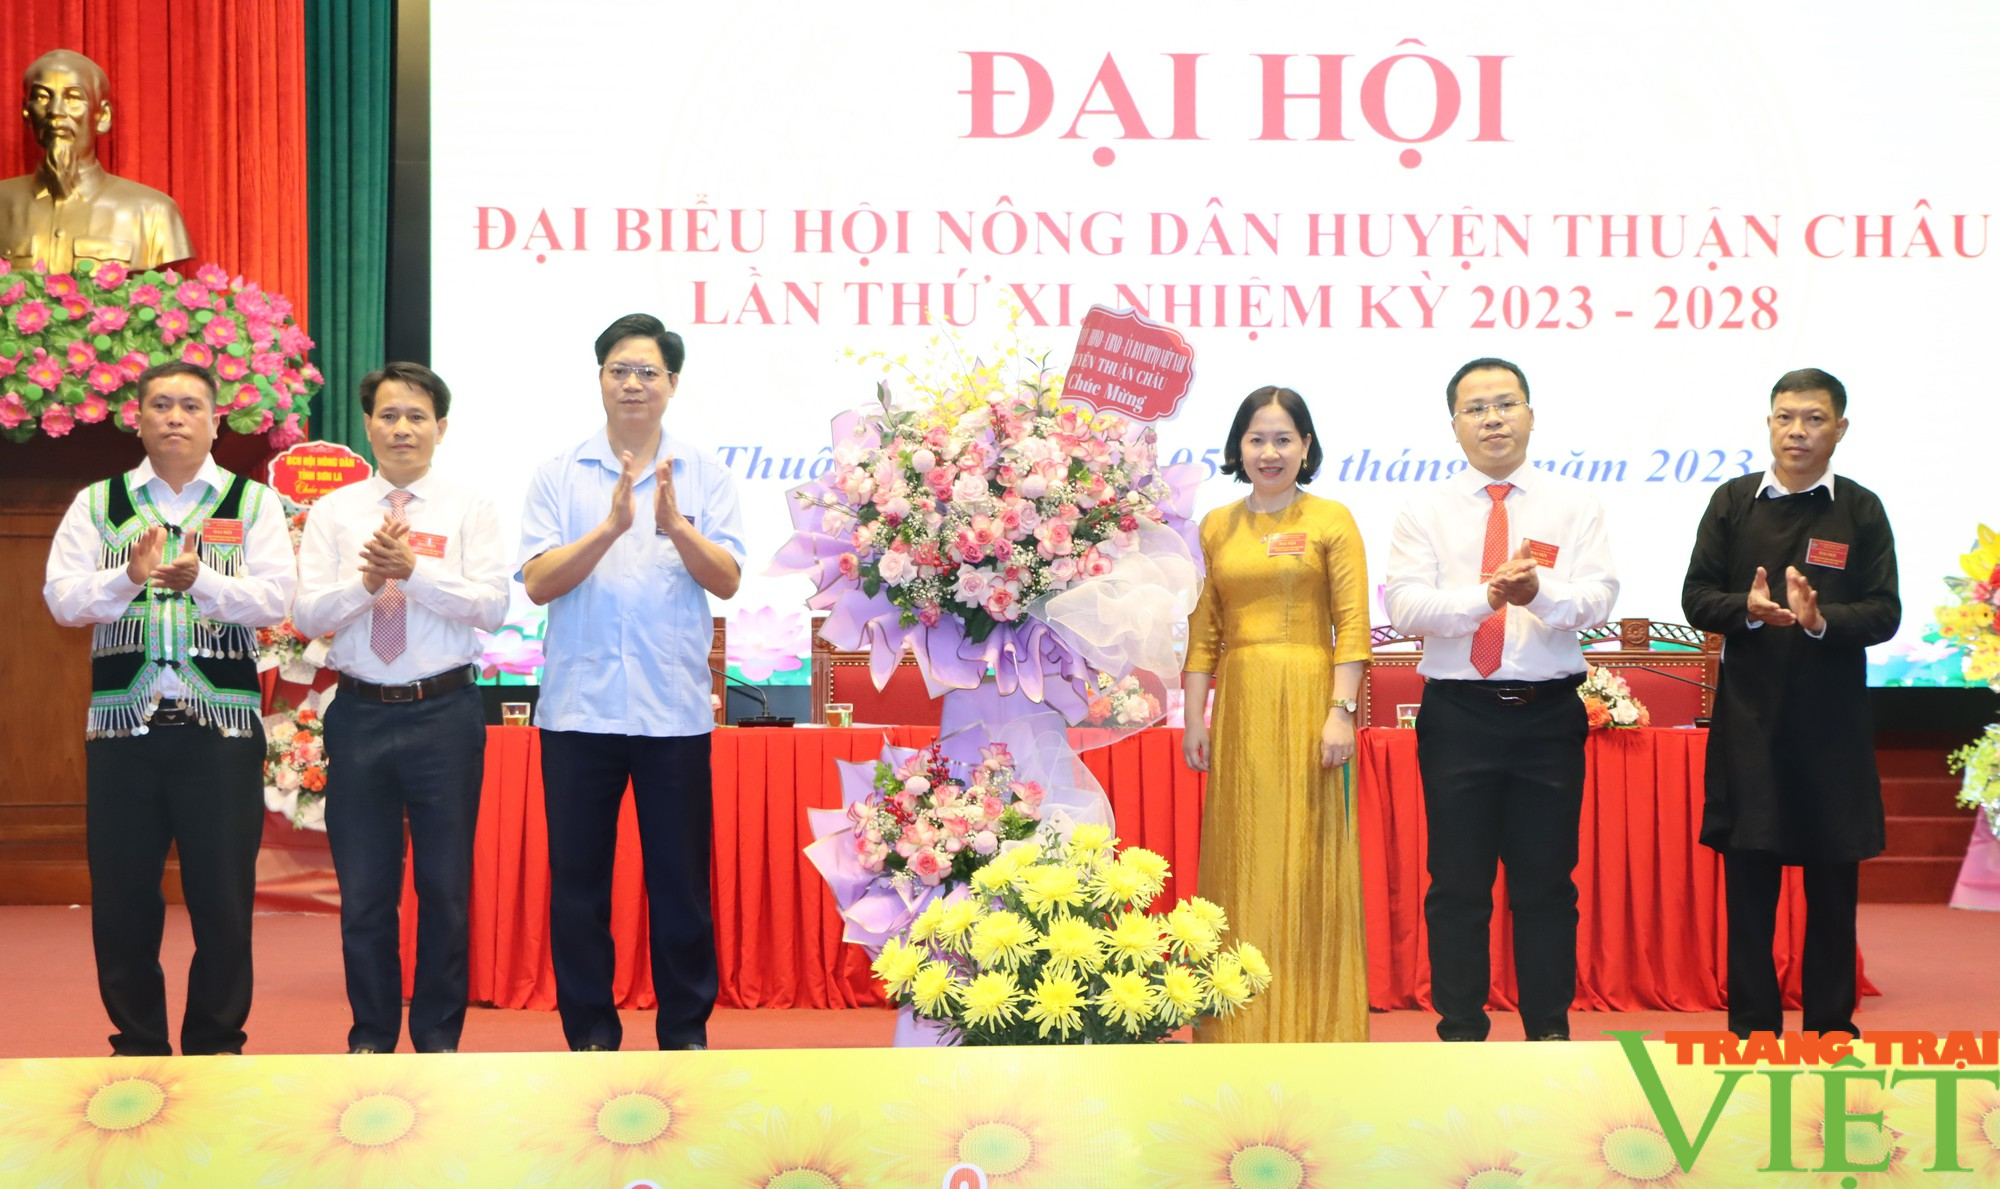 Bà Nguyễn Thúy Ngọc tái đắc cử Chủ tịch Hội Nông dân huyện Thuận Châu (Sơn La) - Ảnh 2.